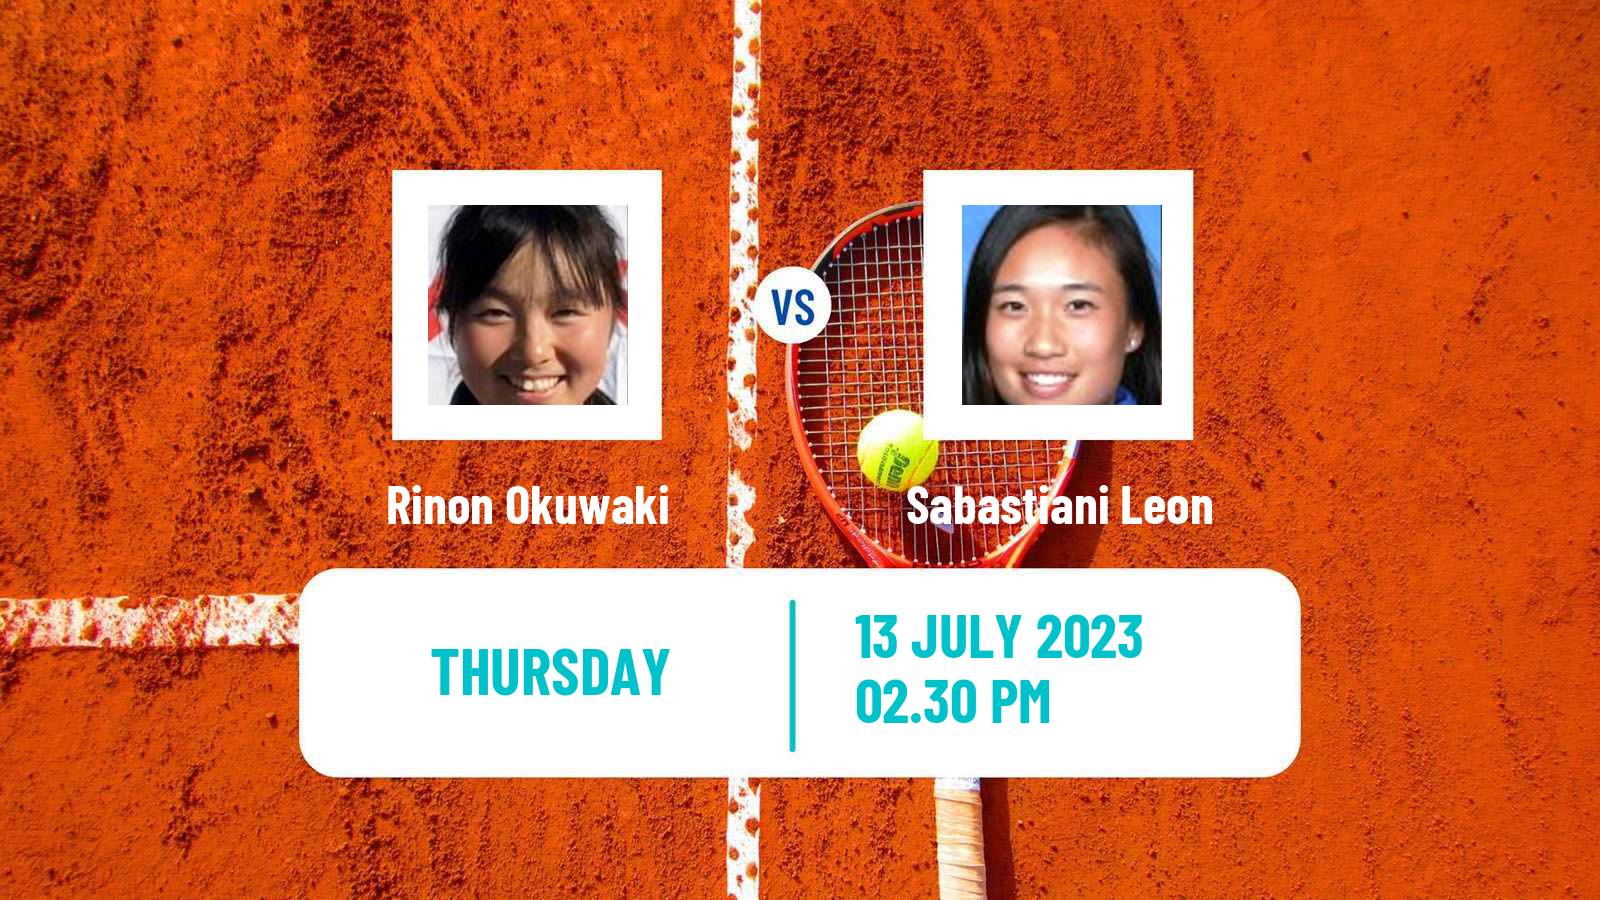 Tennis ITF W15 Lakewood Ca 2 Women Rinon Okuwaki - Sabastiani Leon